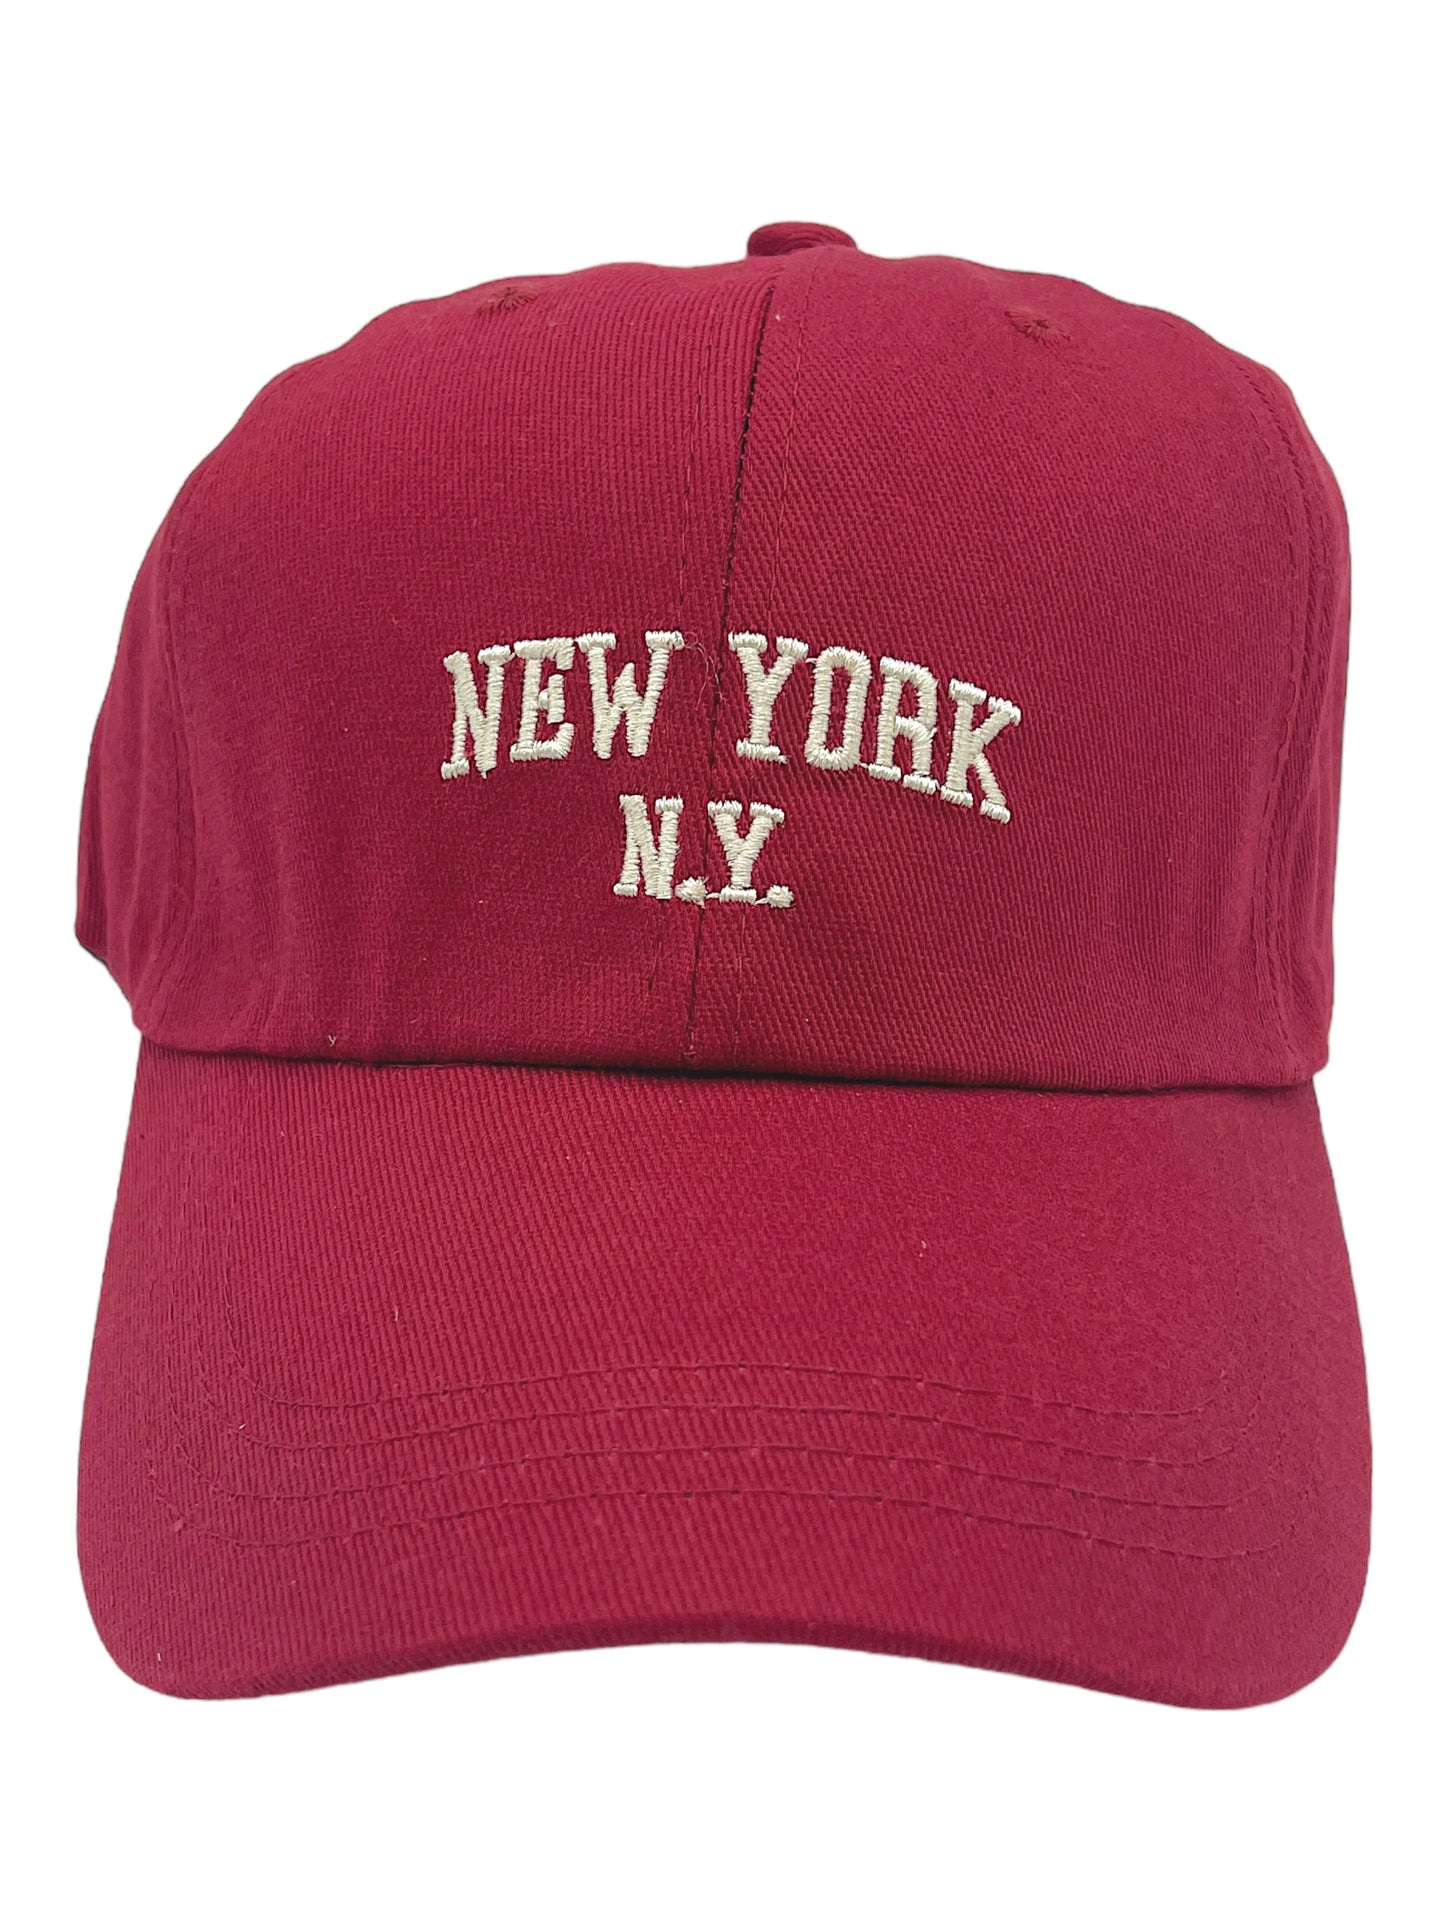 “NEW YORK, N.Y.” Adjustable Dad Cap